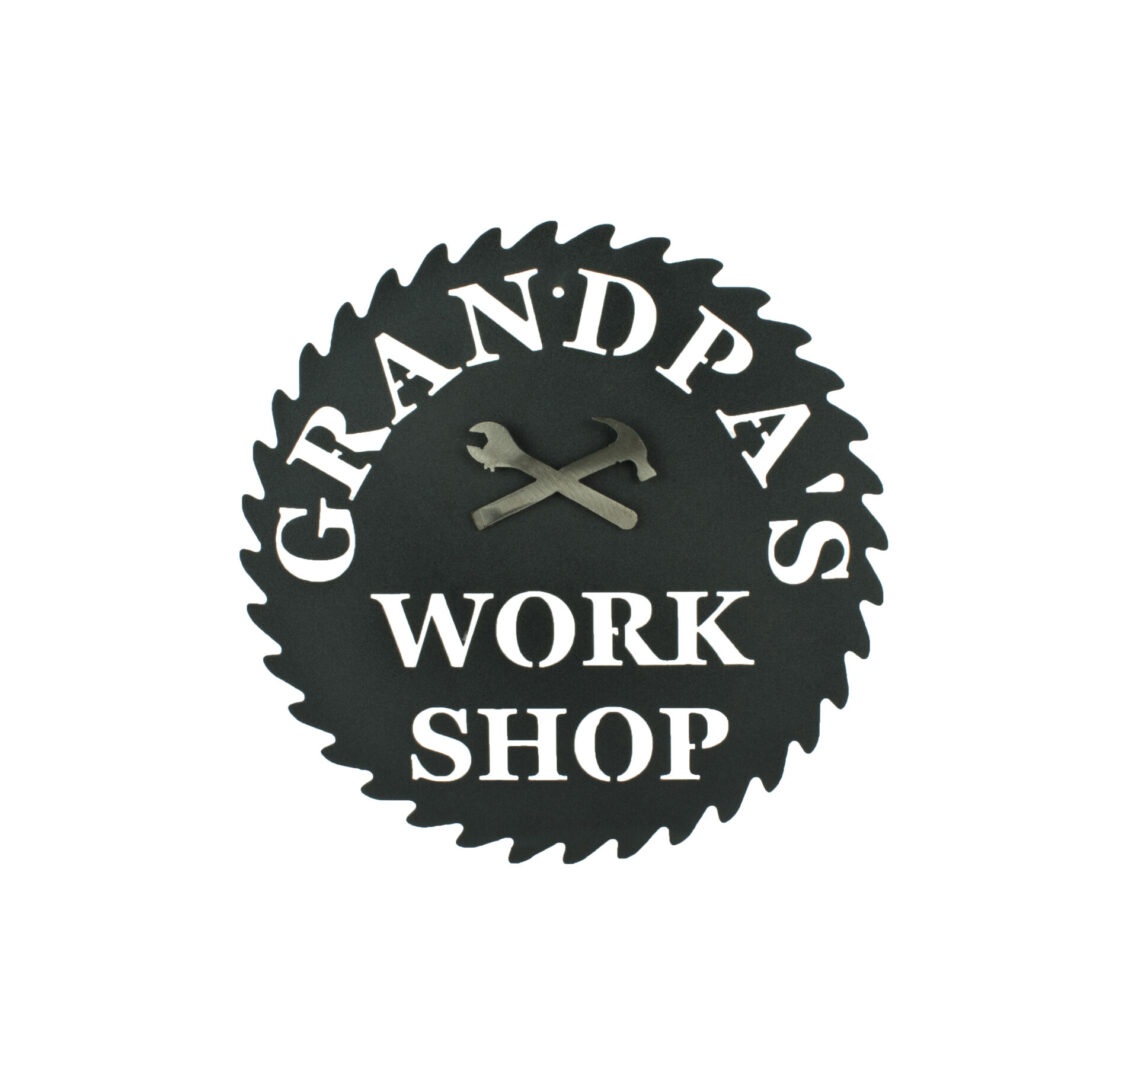 Grandpas Workshop, Saw Blade, and Hammer Sign